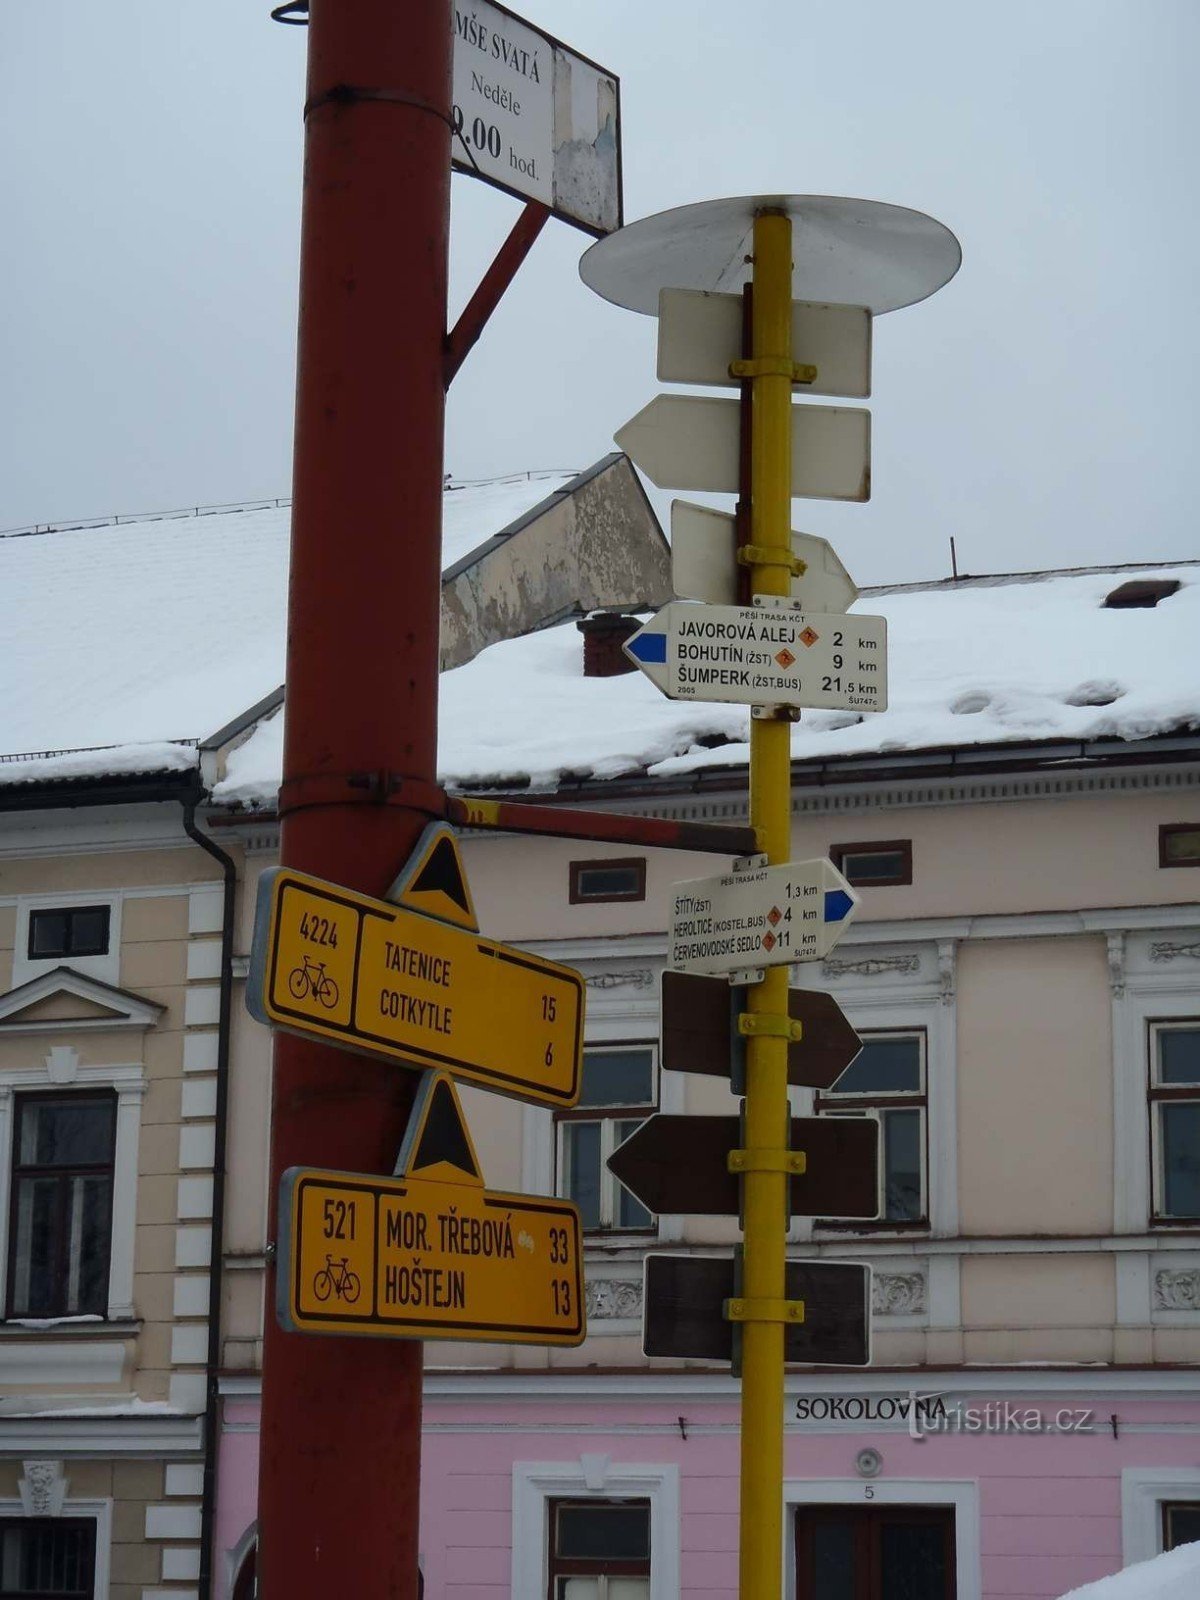 Sinalização e sinalização para bicicletas Štíty - 18.2.2012